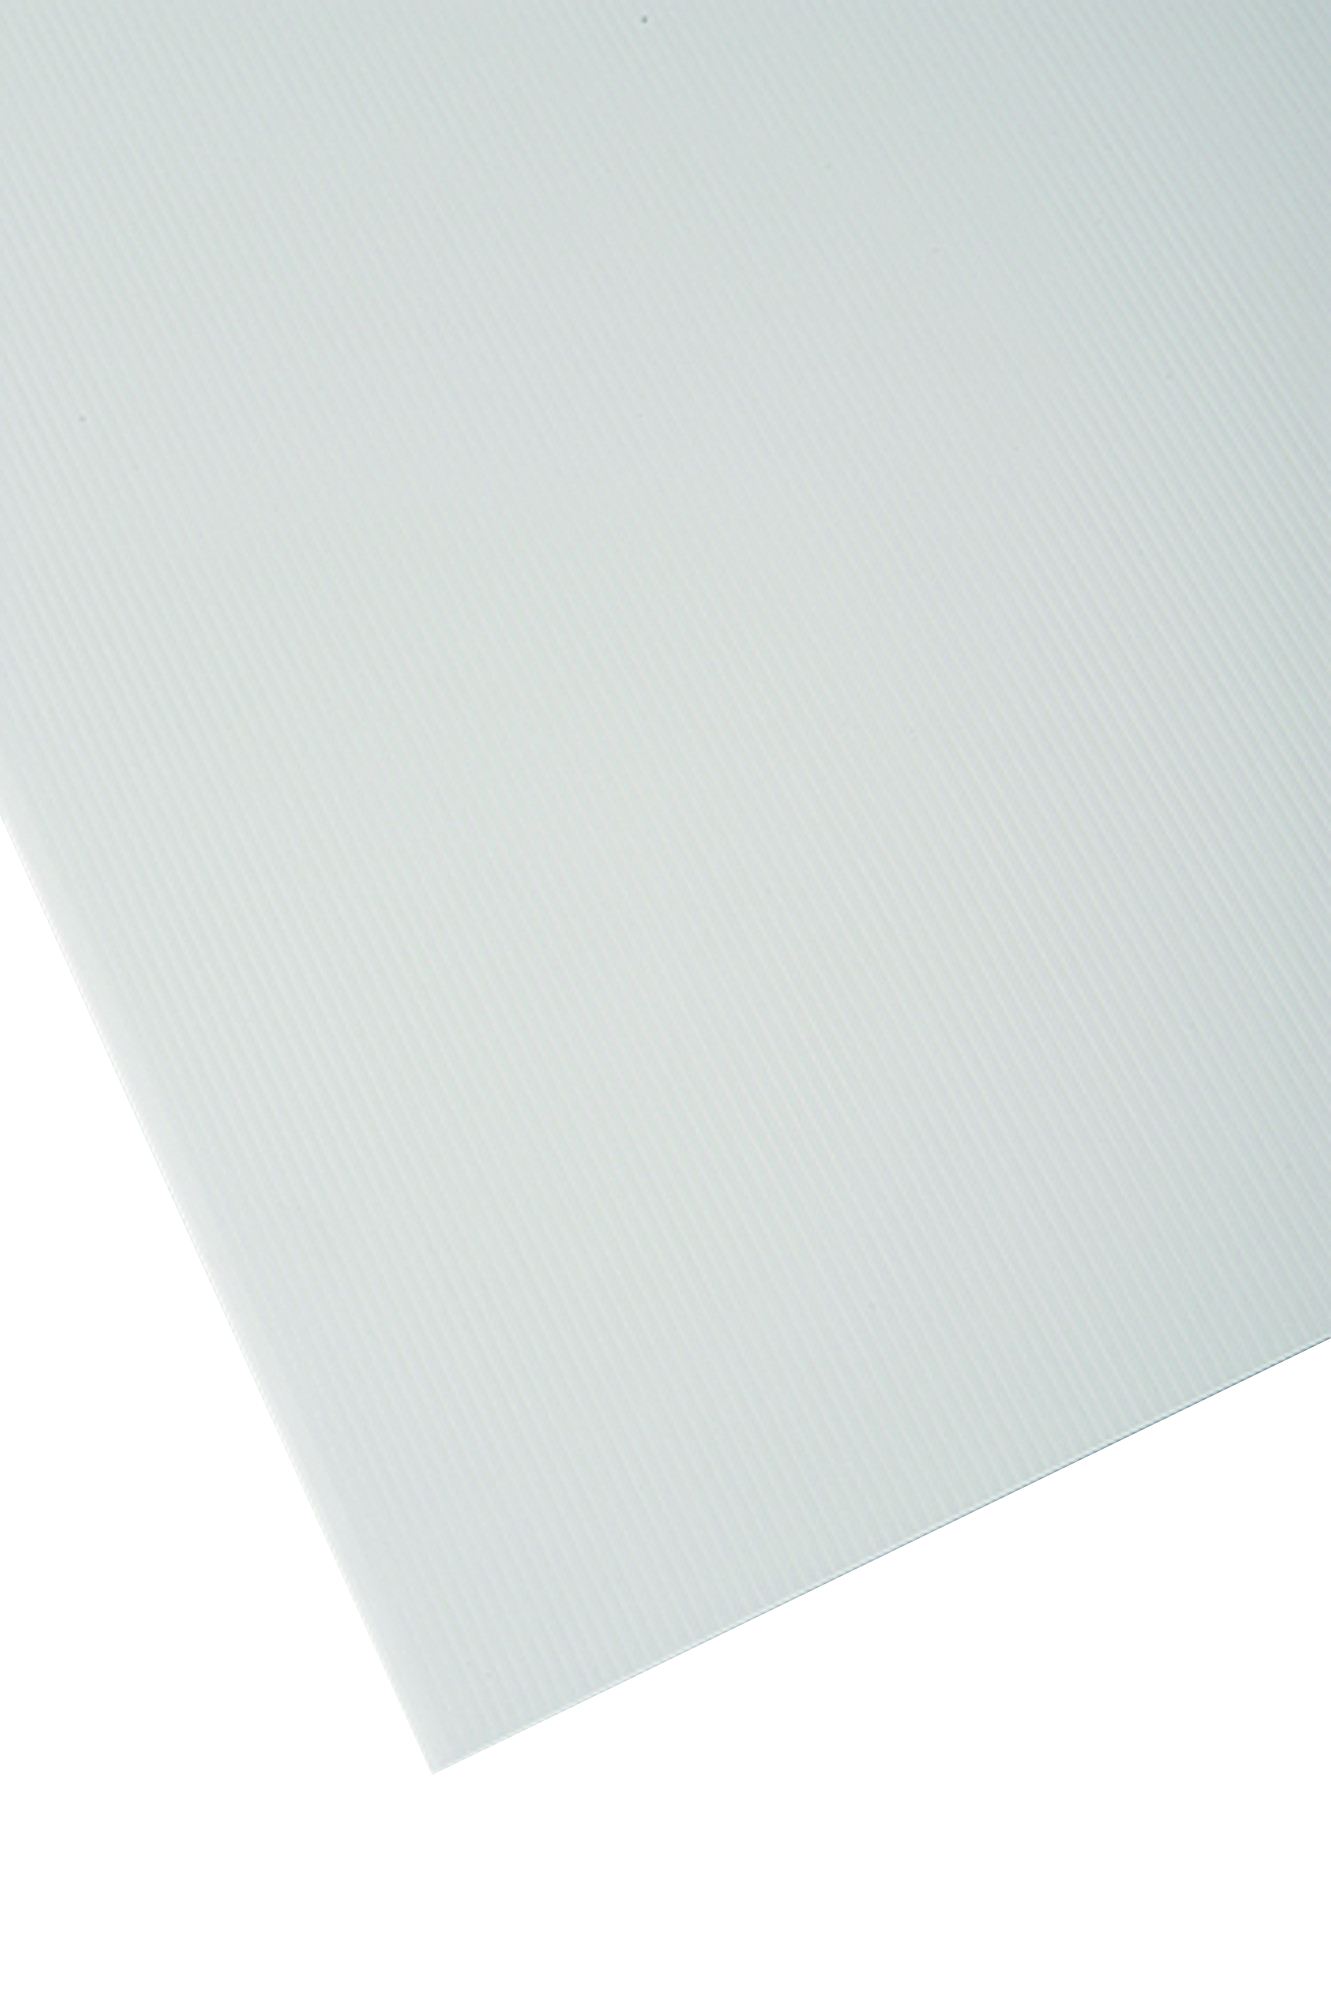 Placa de polipropileno blanco opaco de 2.5 mm de grosor y 150x50cm